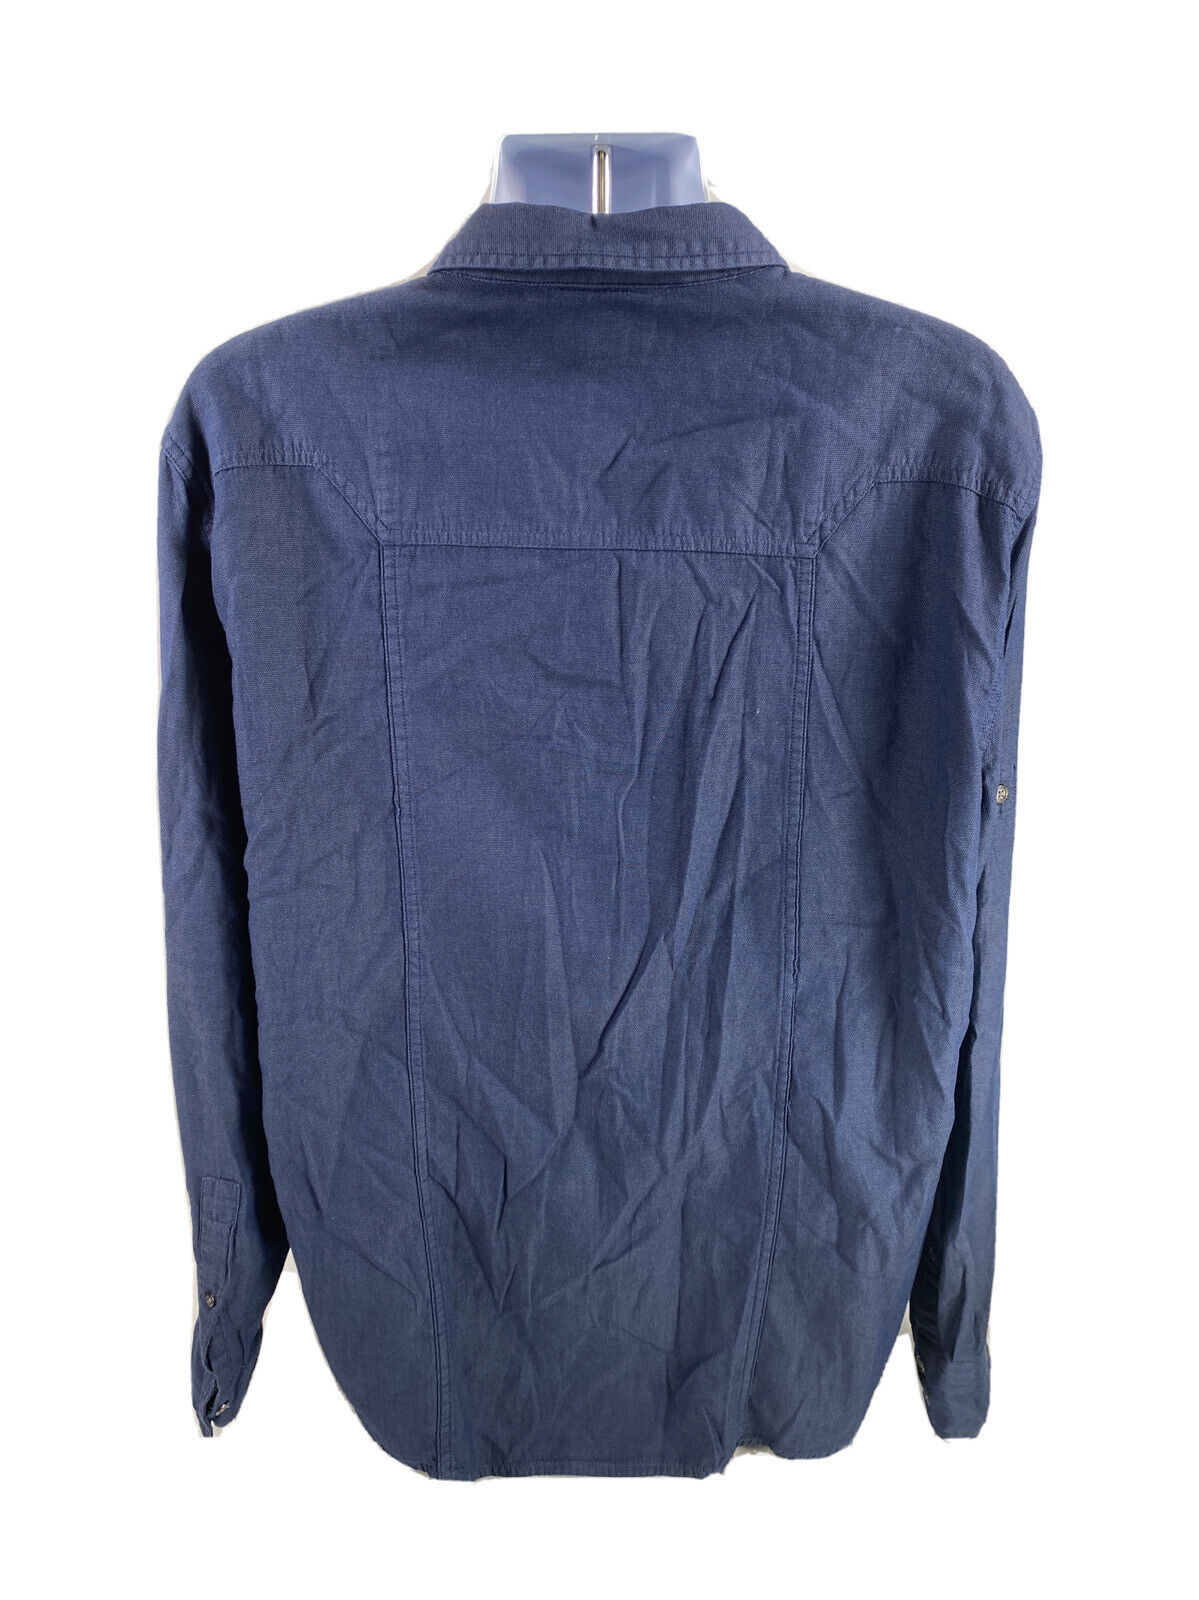 Rock &amp; Republic Camisa casual con botones de manga larga azul marino para hombre - XXL